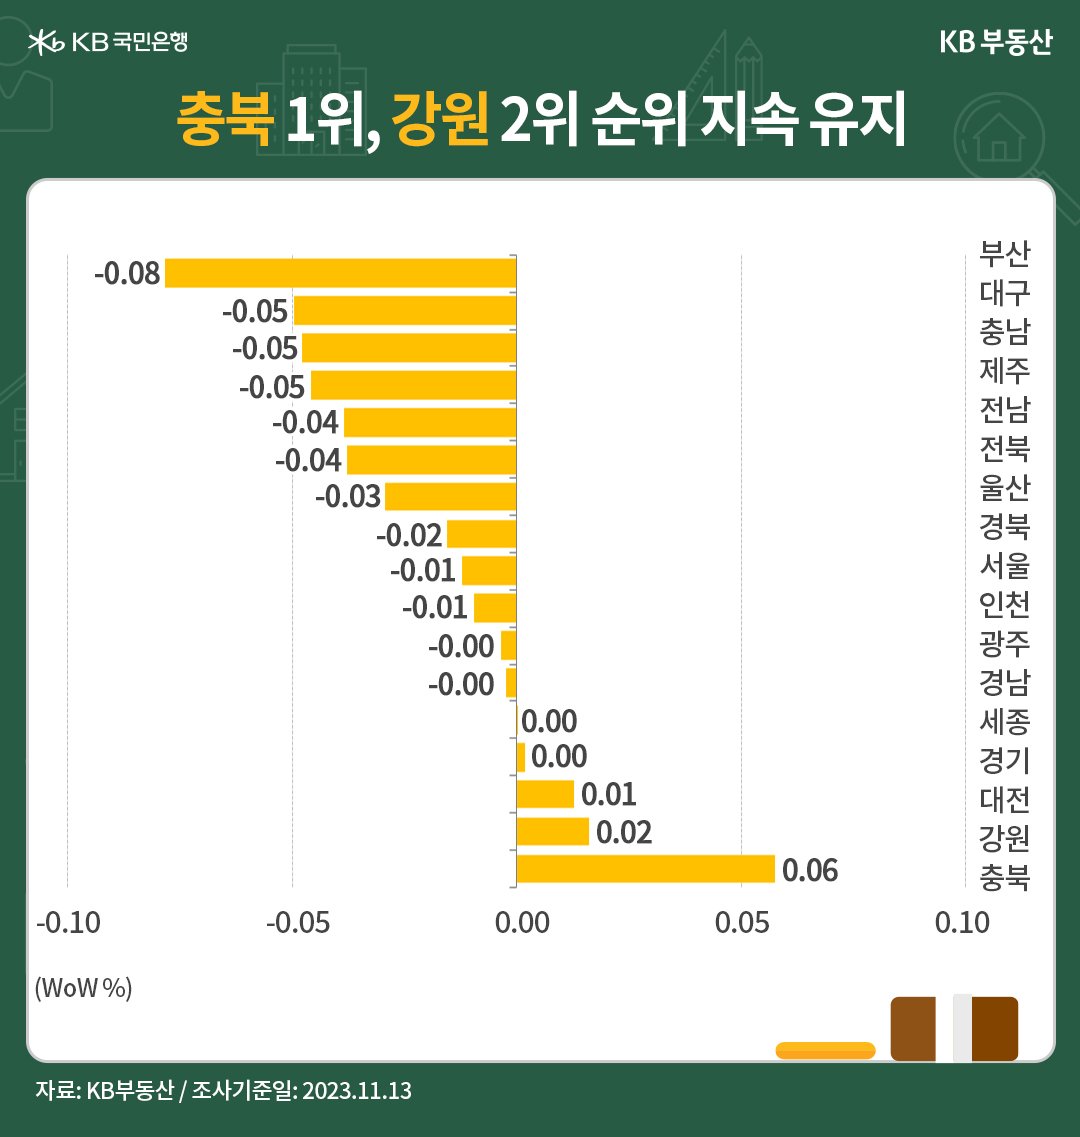 전국 권역별 매매가격의 전주 대비 증감률을 표현한 막대 그래프. 충북과 강원이 나란히 1,2위를 차지하고 있다.